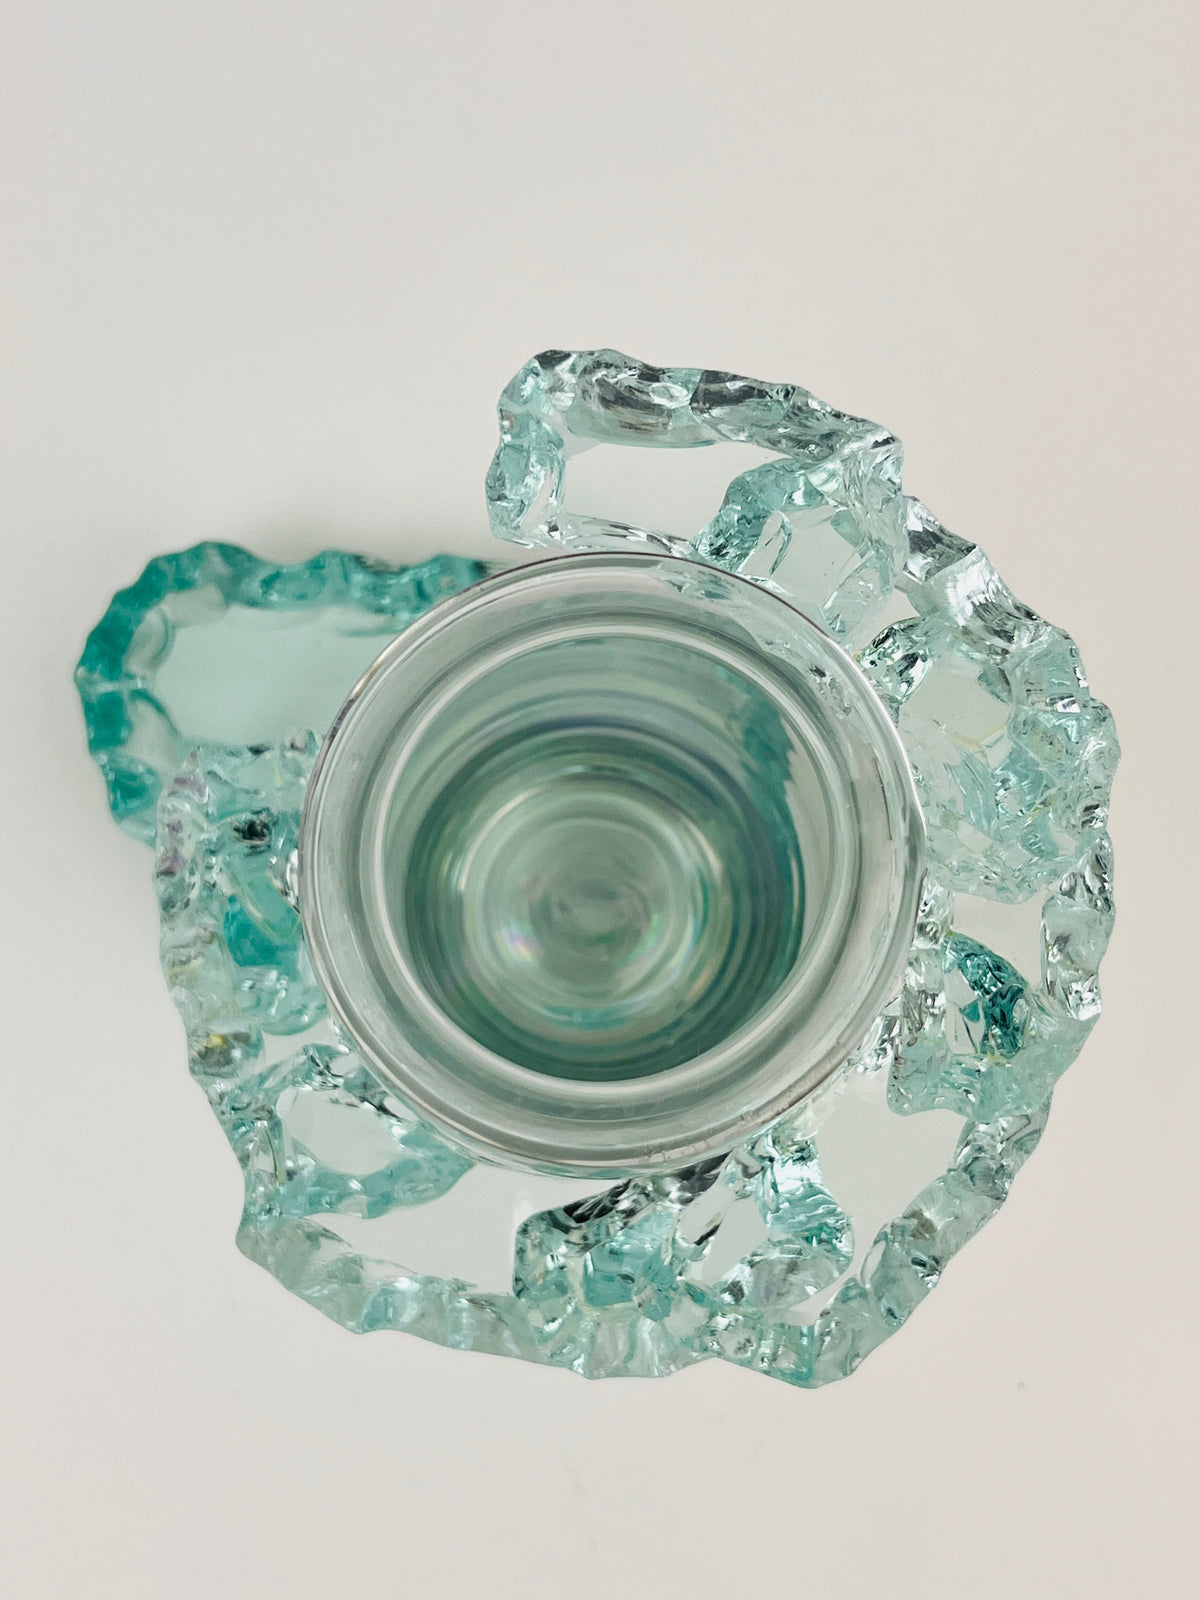 Postmodern Stepped Glass Vase